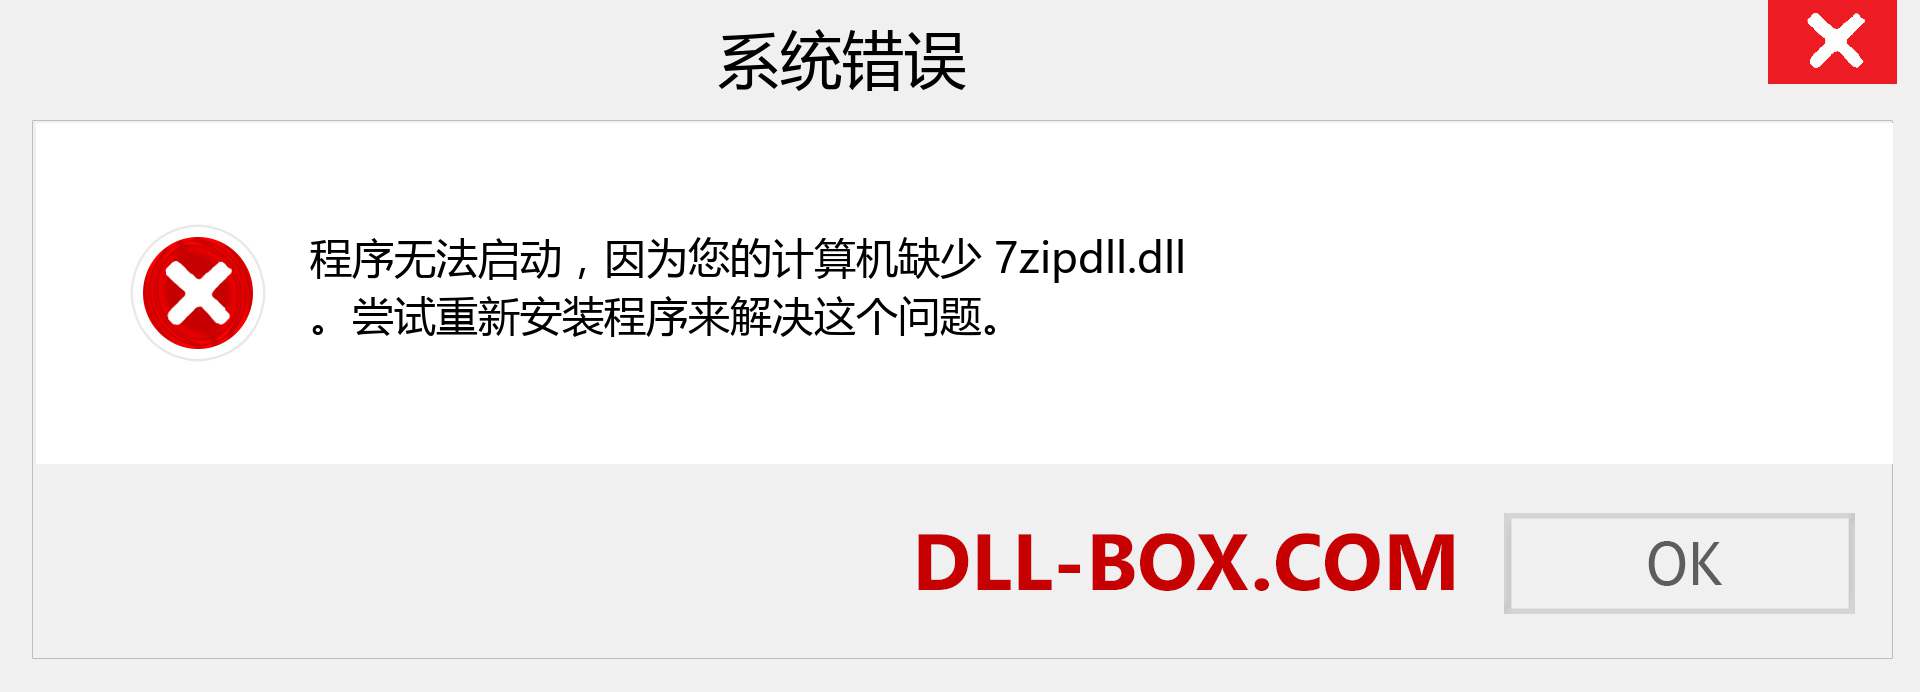 7zipdll.dll 文件丢失？。 适用于 Windows 7、8、10 的下载 - 修复 Windows、照片、图像上的 7zipdll dll 丢失错误